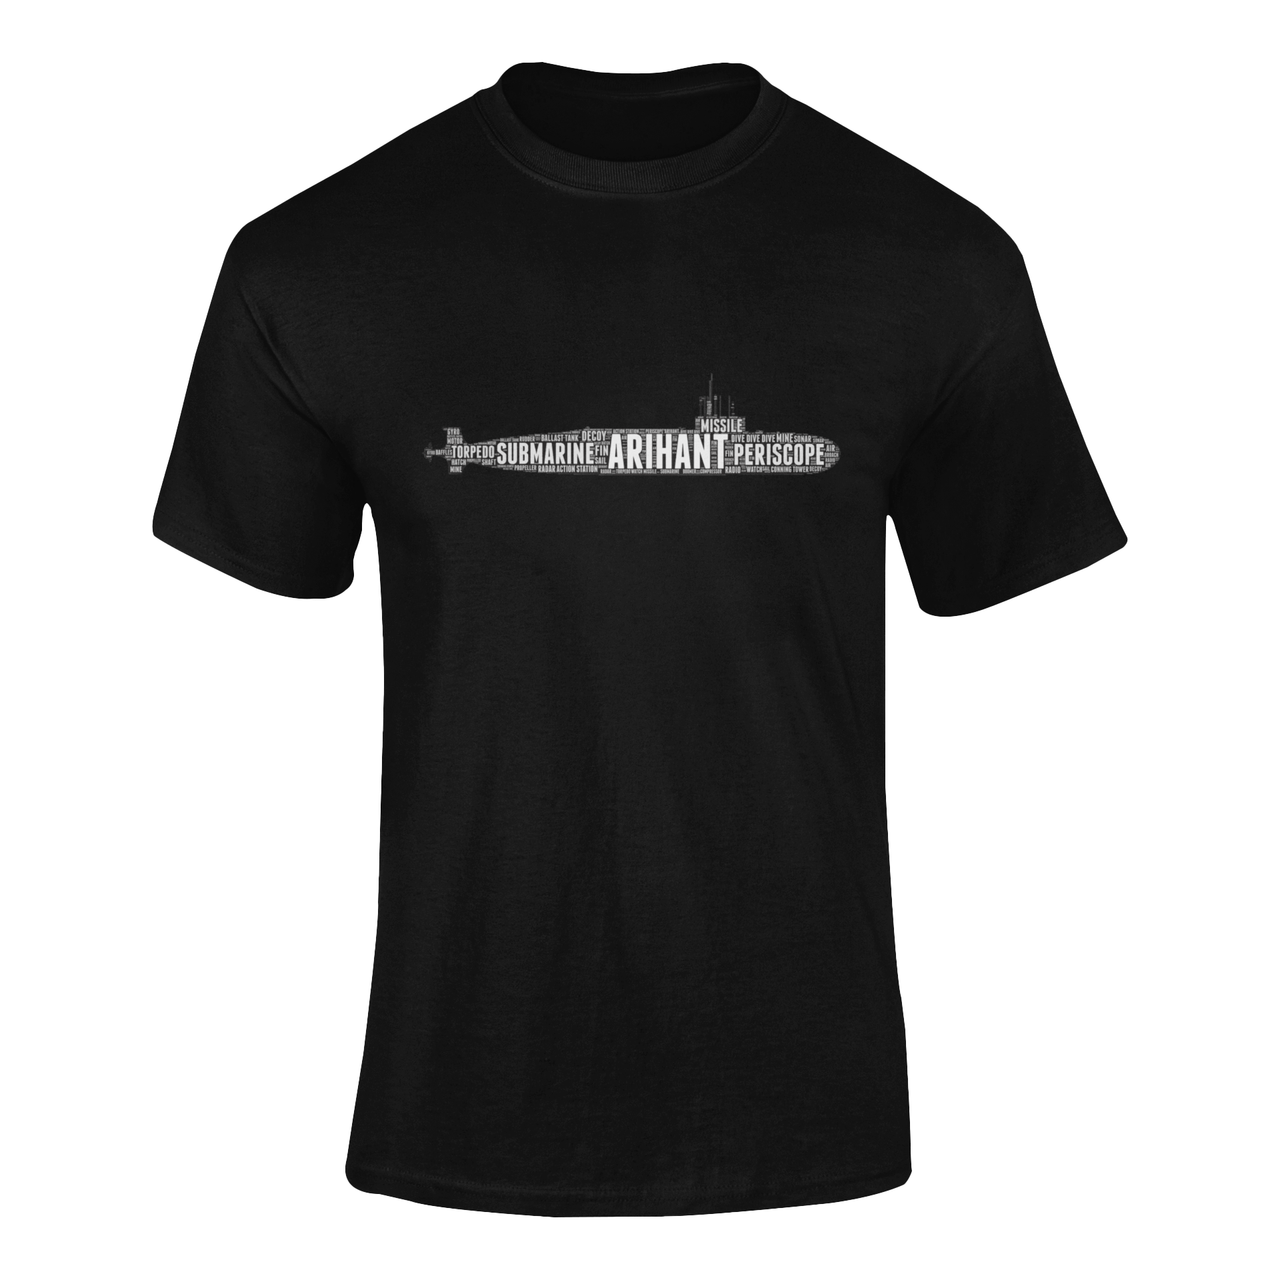 Navy Word Cloud T-shirt - Arihant Submarine (Men)